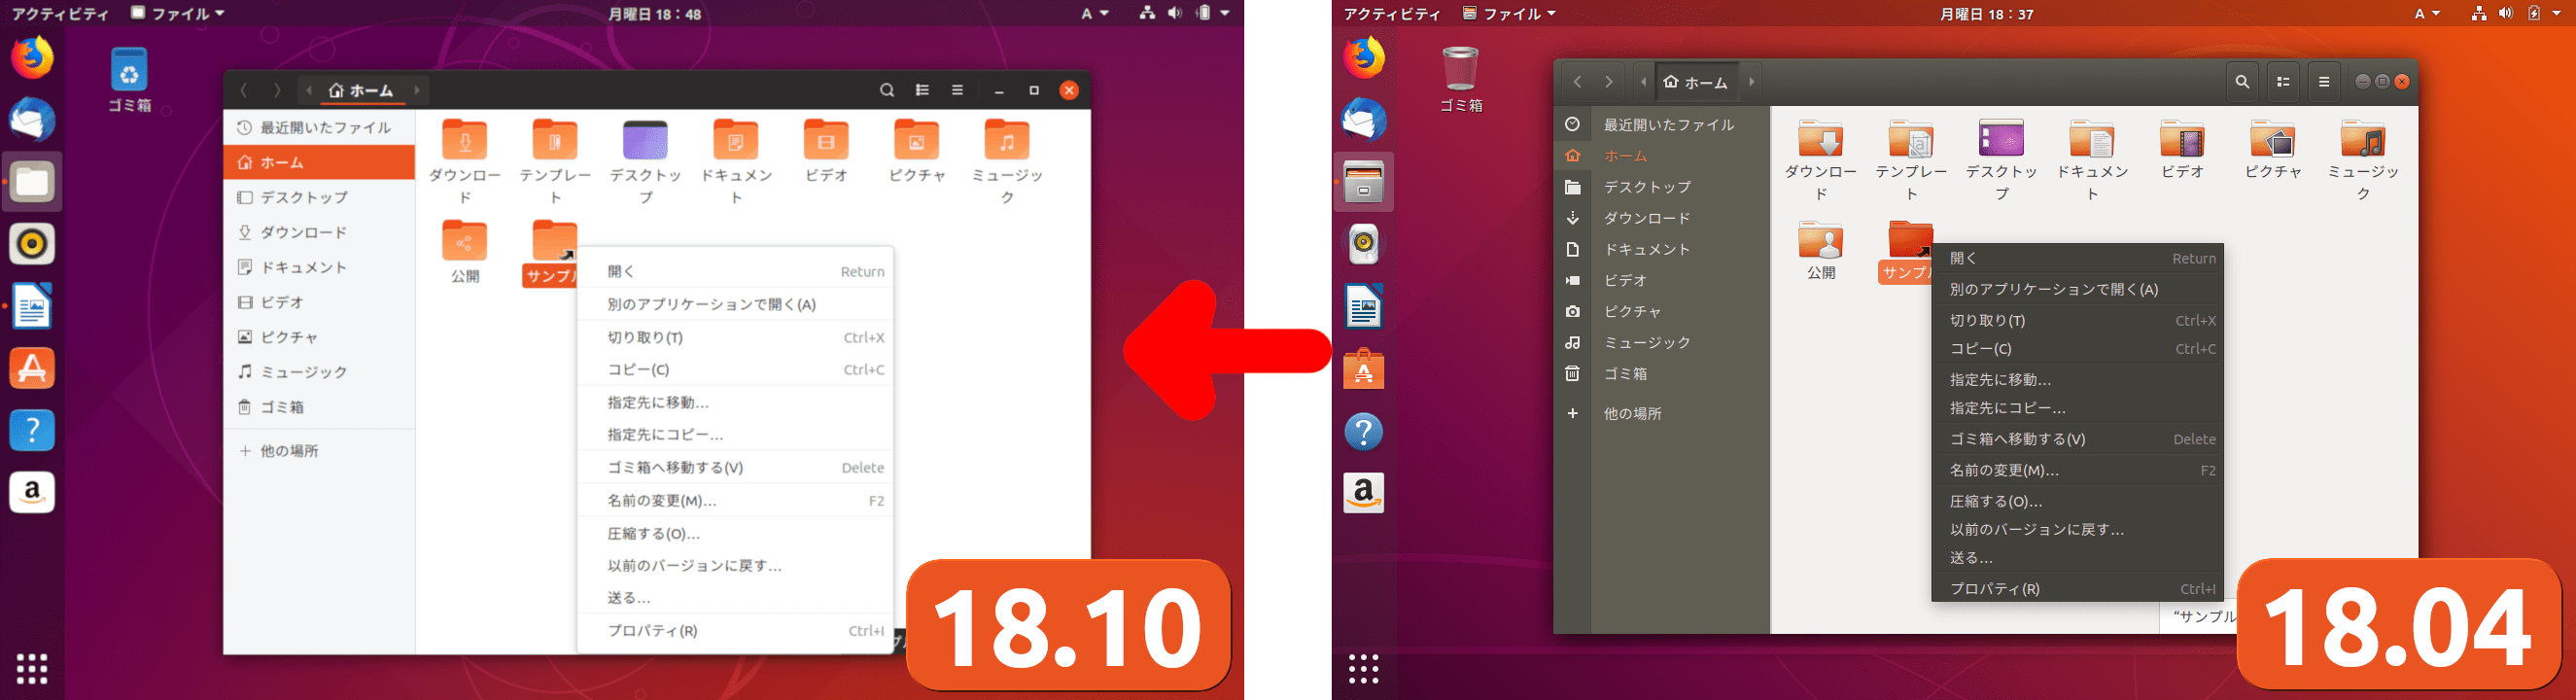 Ubuntu 18 10でデスクトップはどう変わった 18 04との比較 新機能